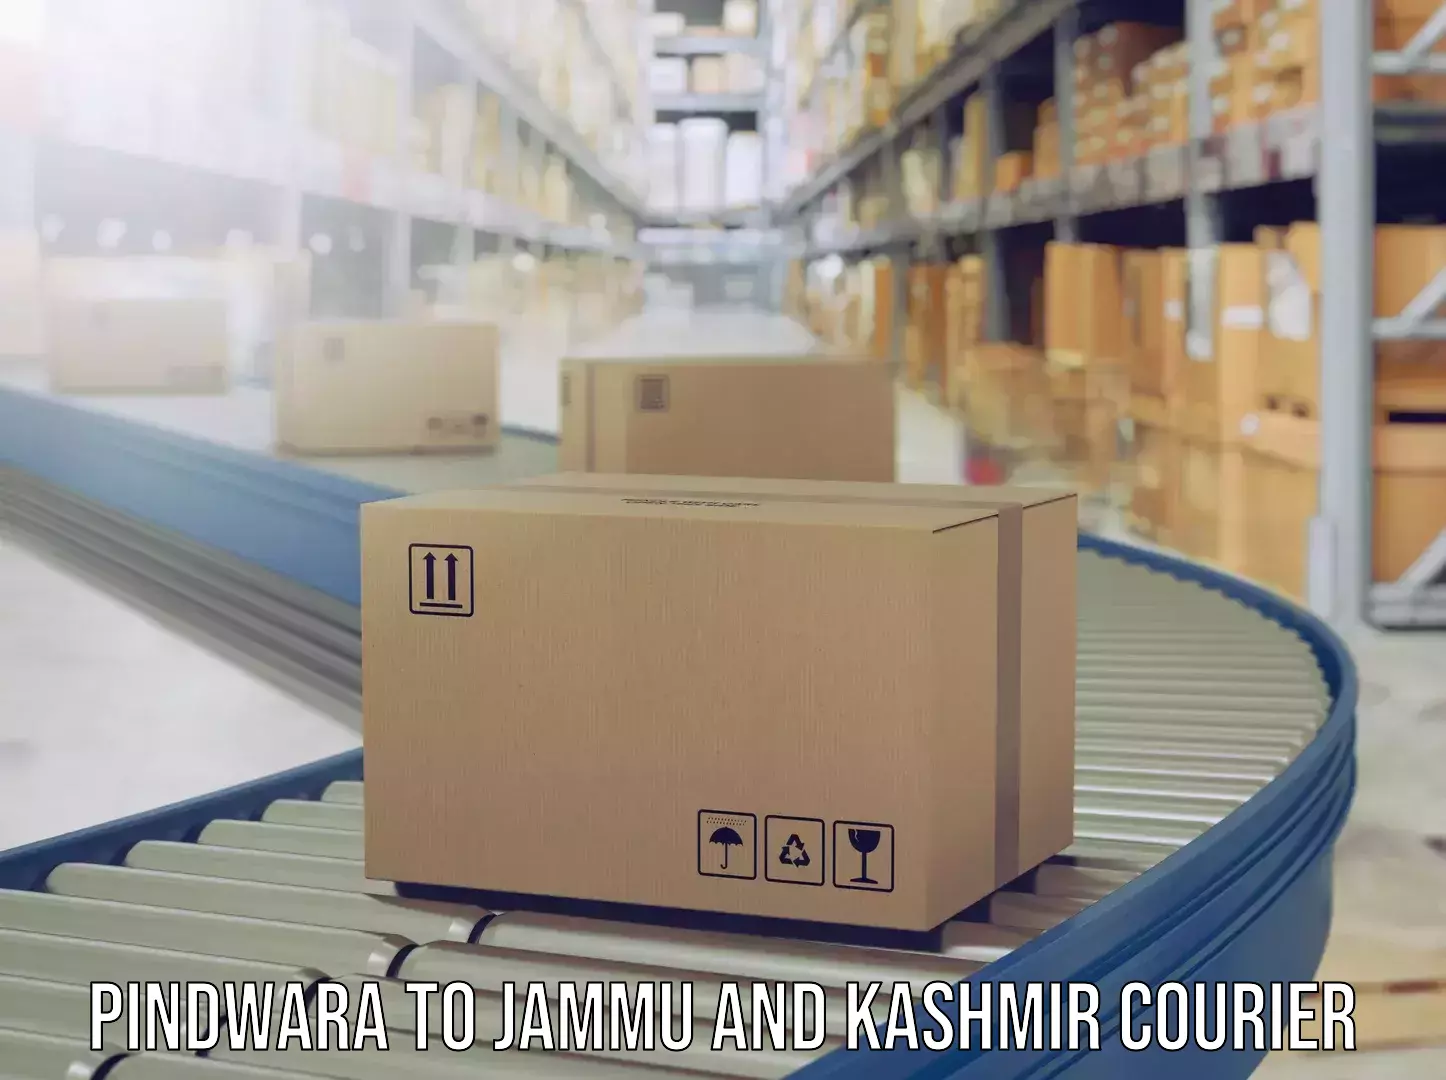 Express baggage shipping Pindwara to Jammu and Kashmir